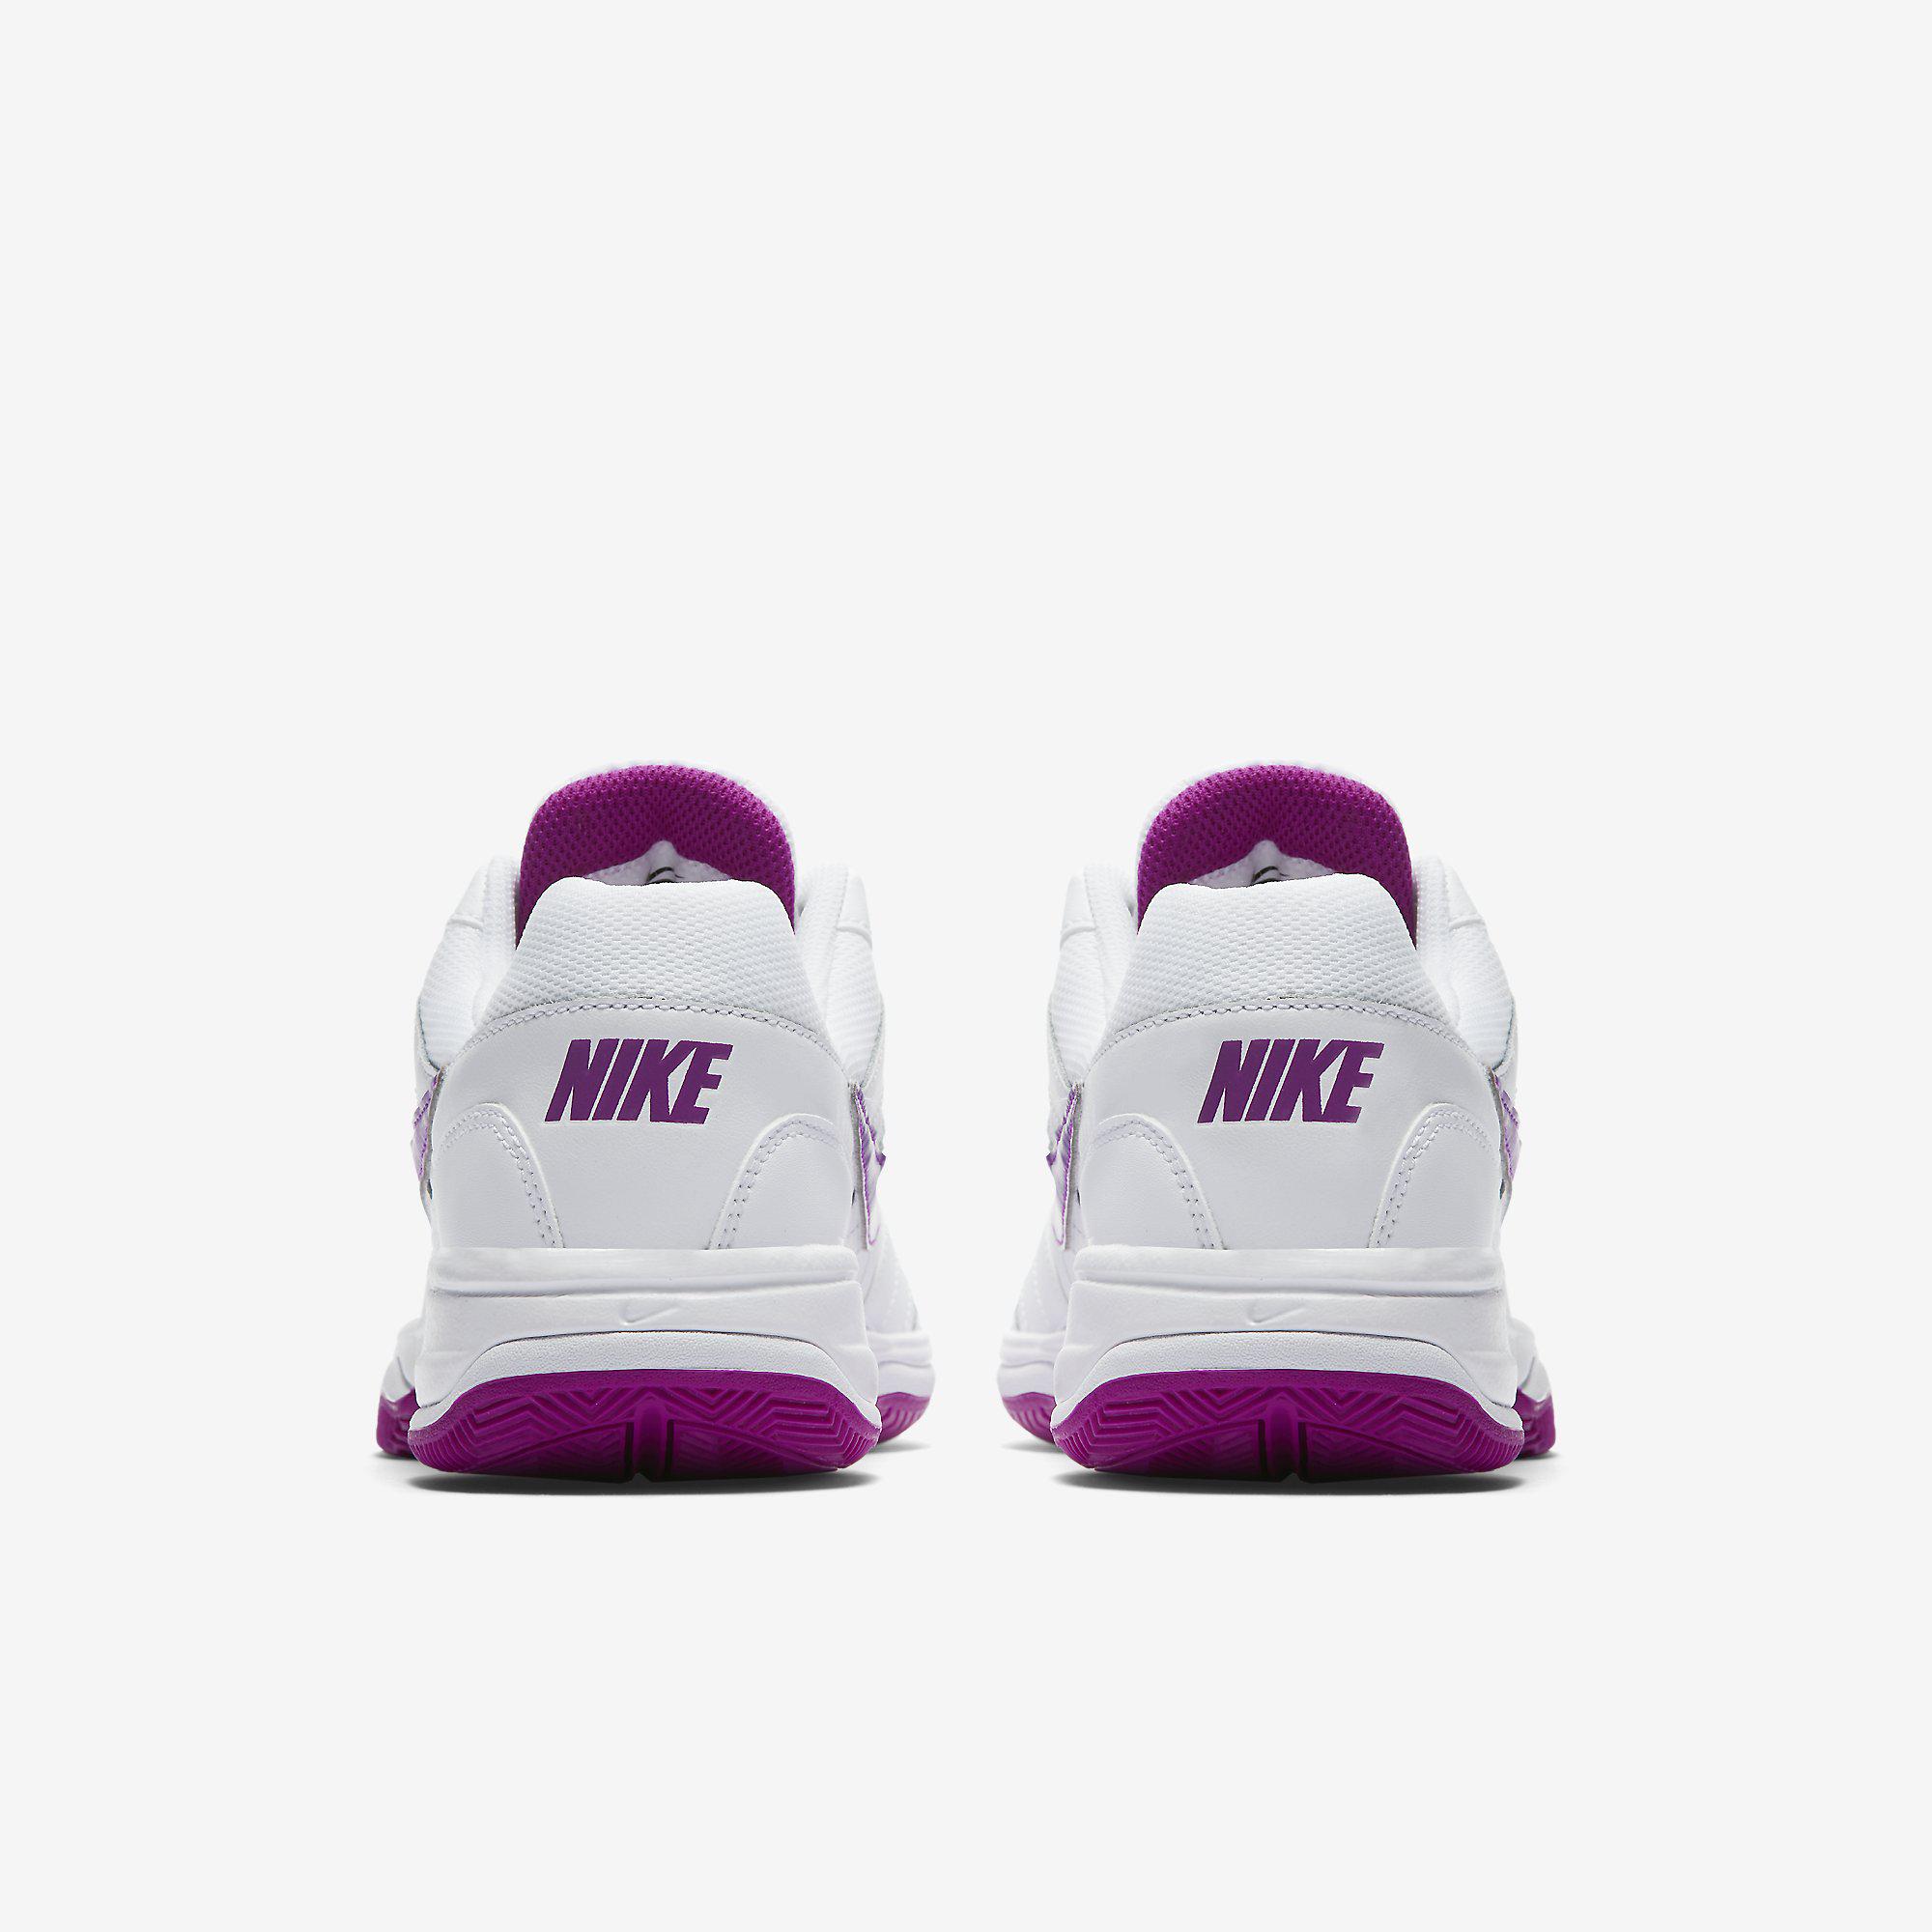 Nike Womens Court Lite Tennis Shoes - White/Vivid Purple - Tennisnuts.com